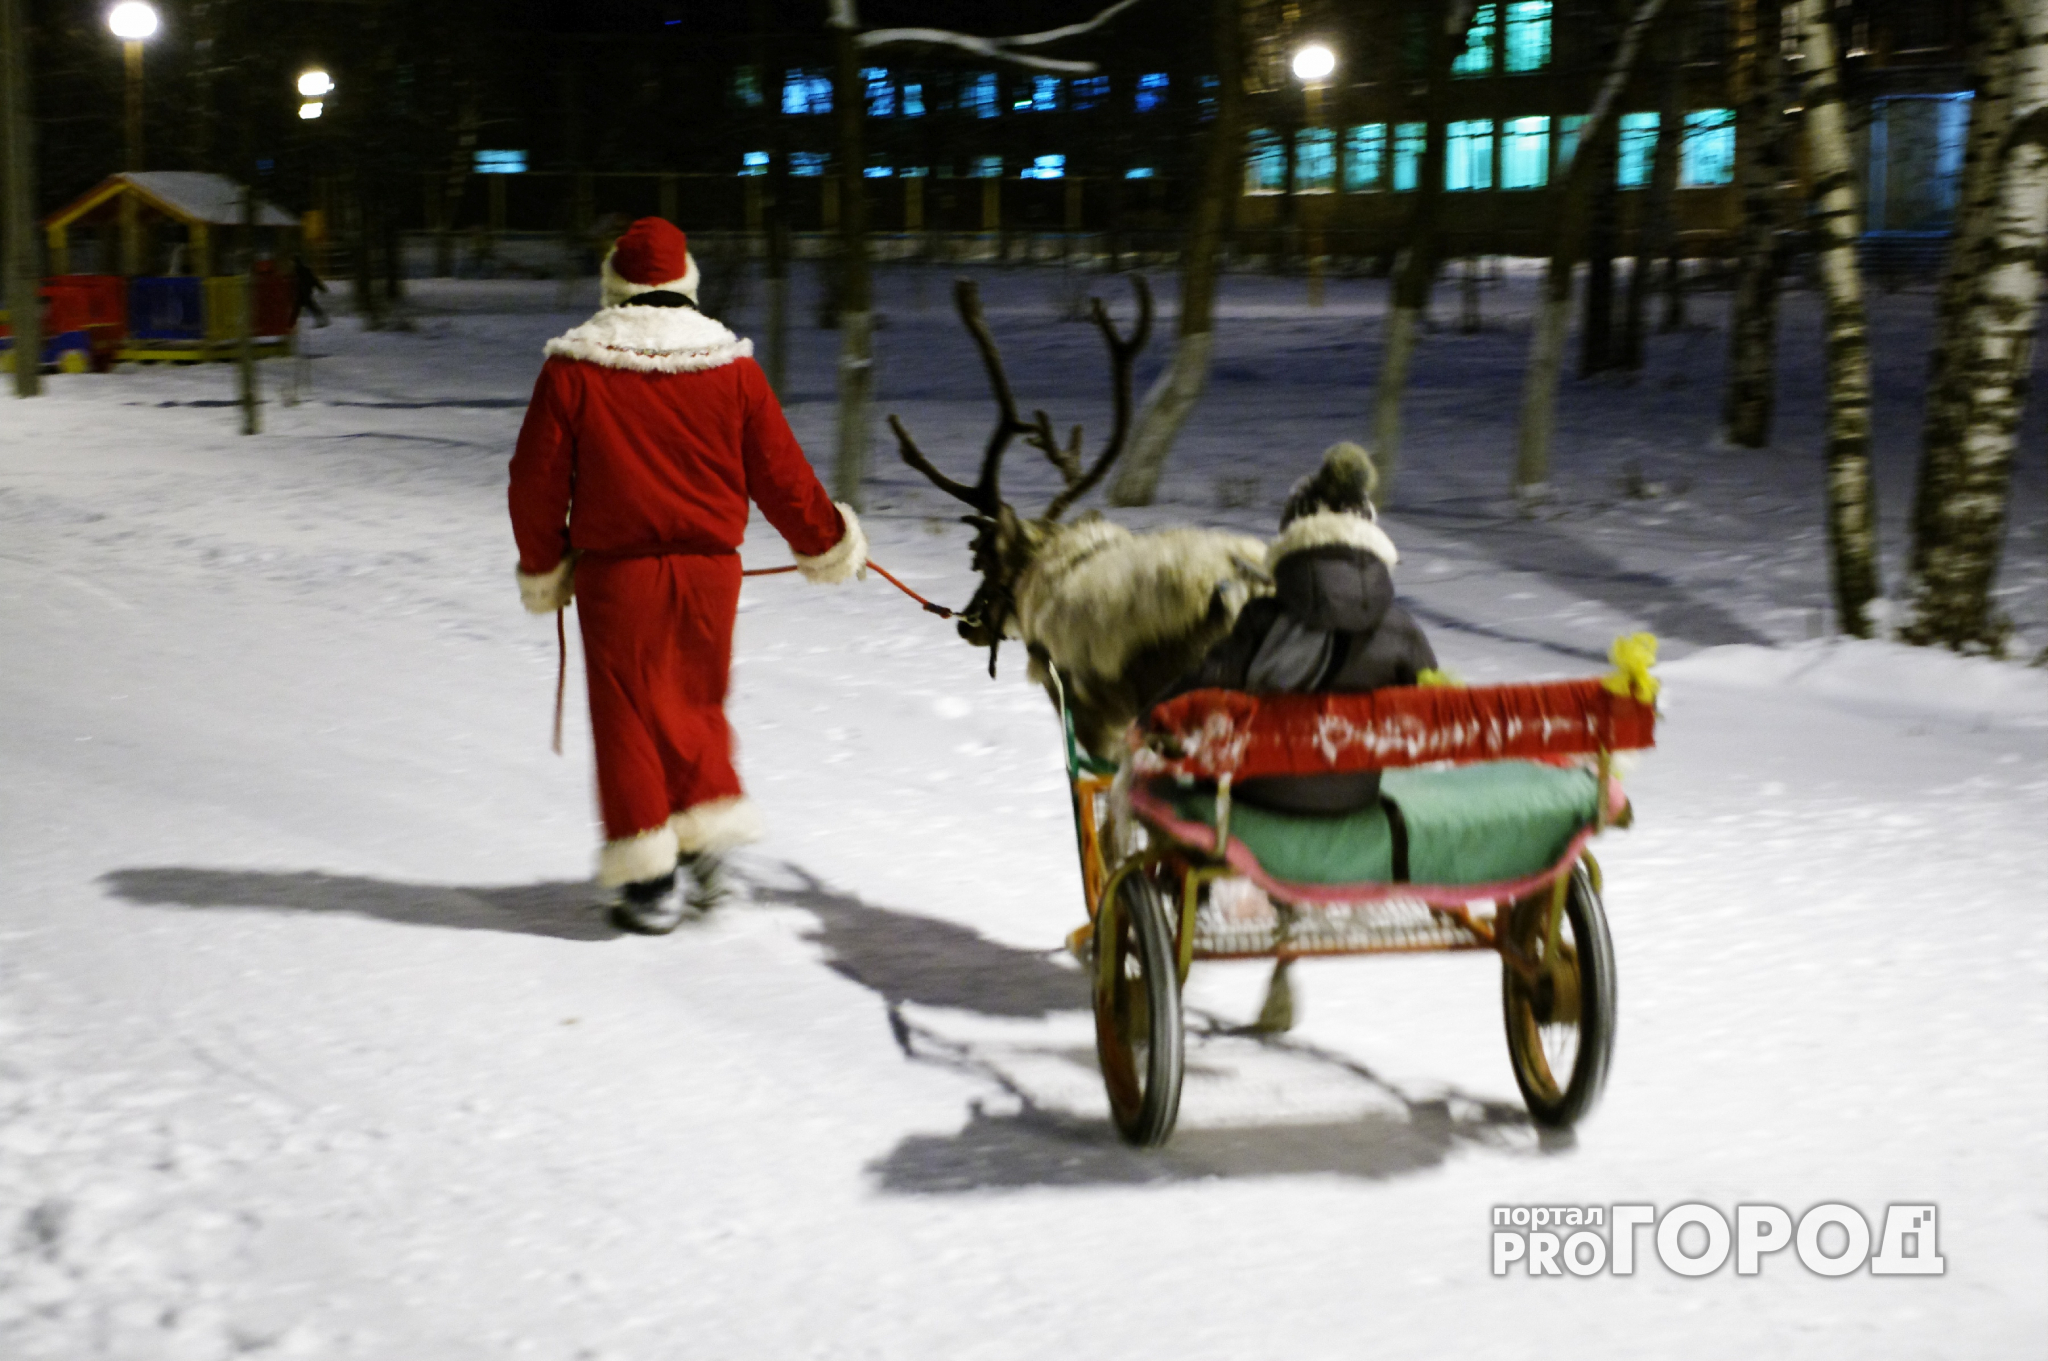 Кировчане обсуждают Деда Мороза чаще, чем жители других регионов